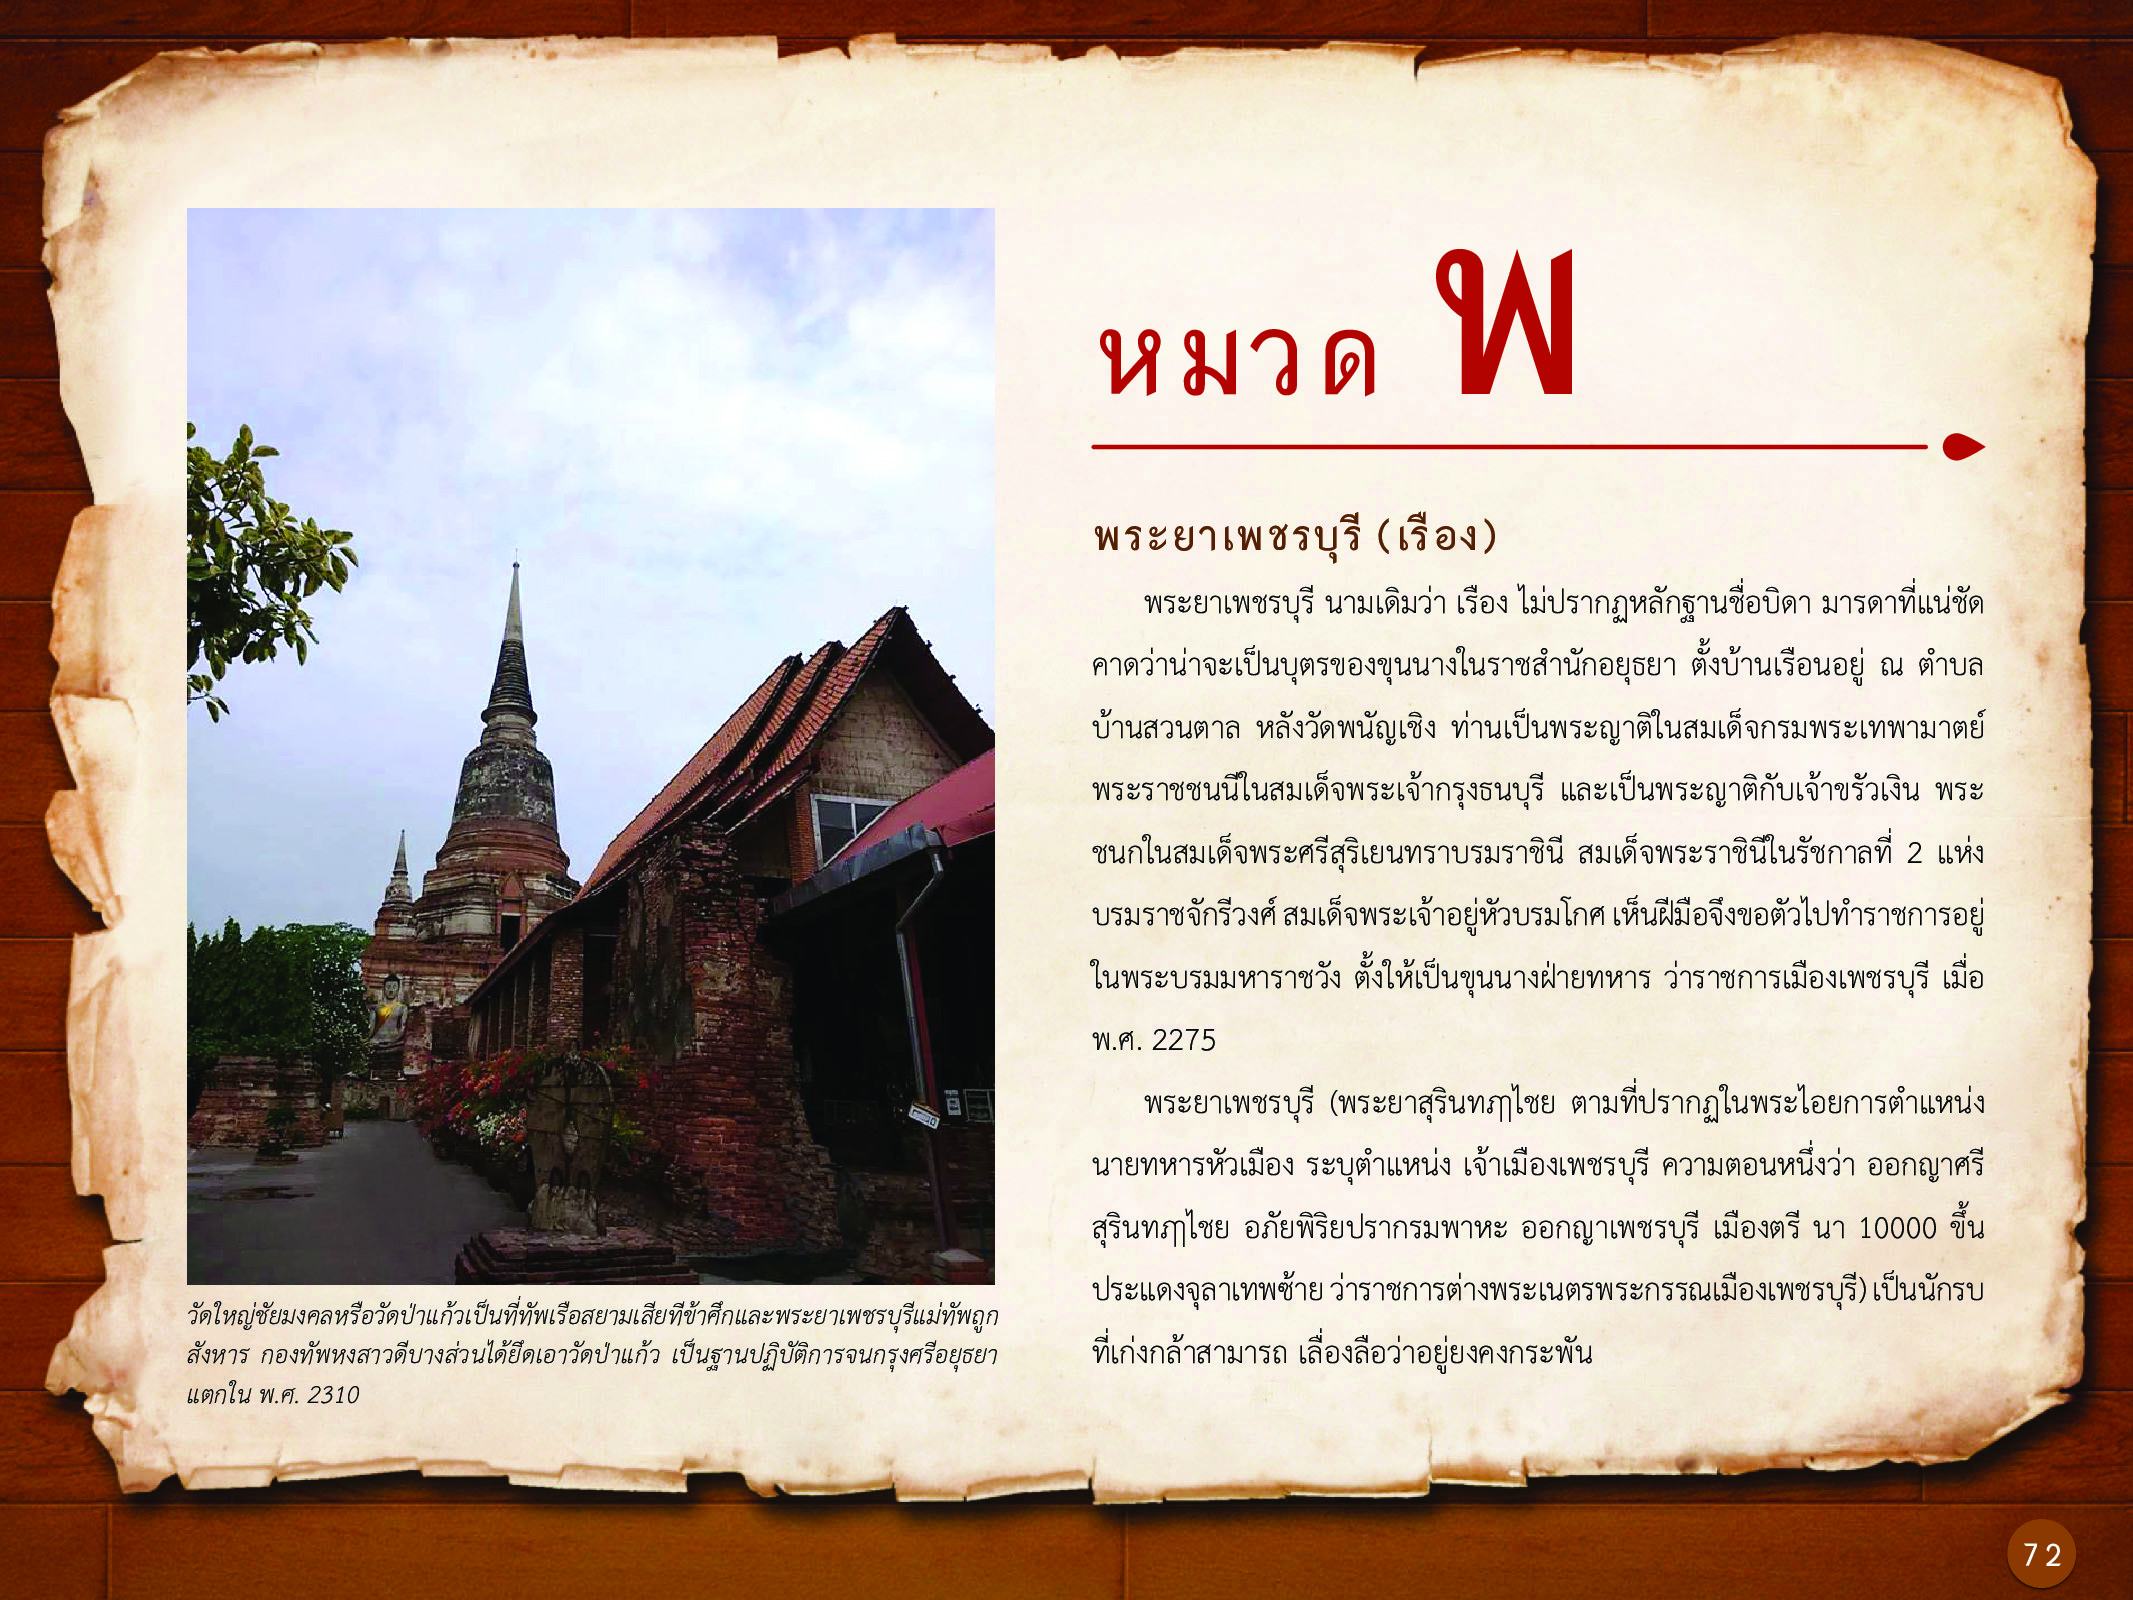 ประวัติศาสตร์กรุงธนบุรี ./images/history_dhonburi/72.jpg